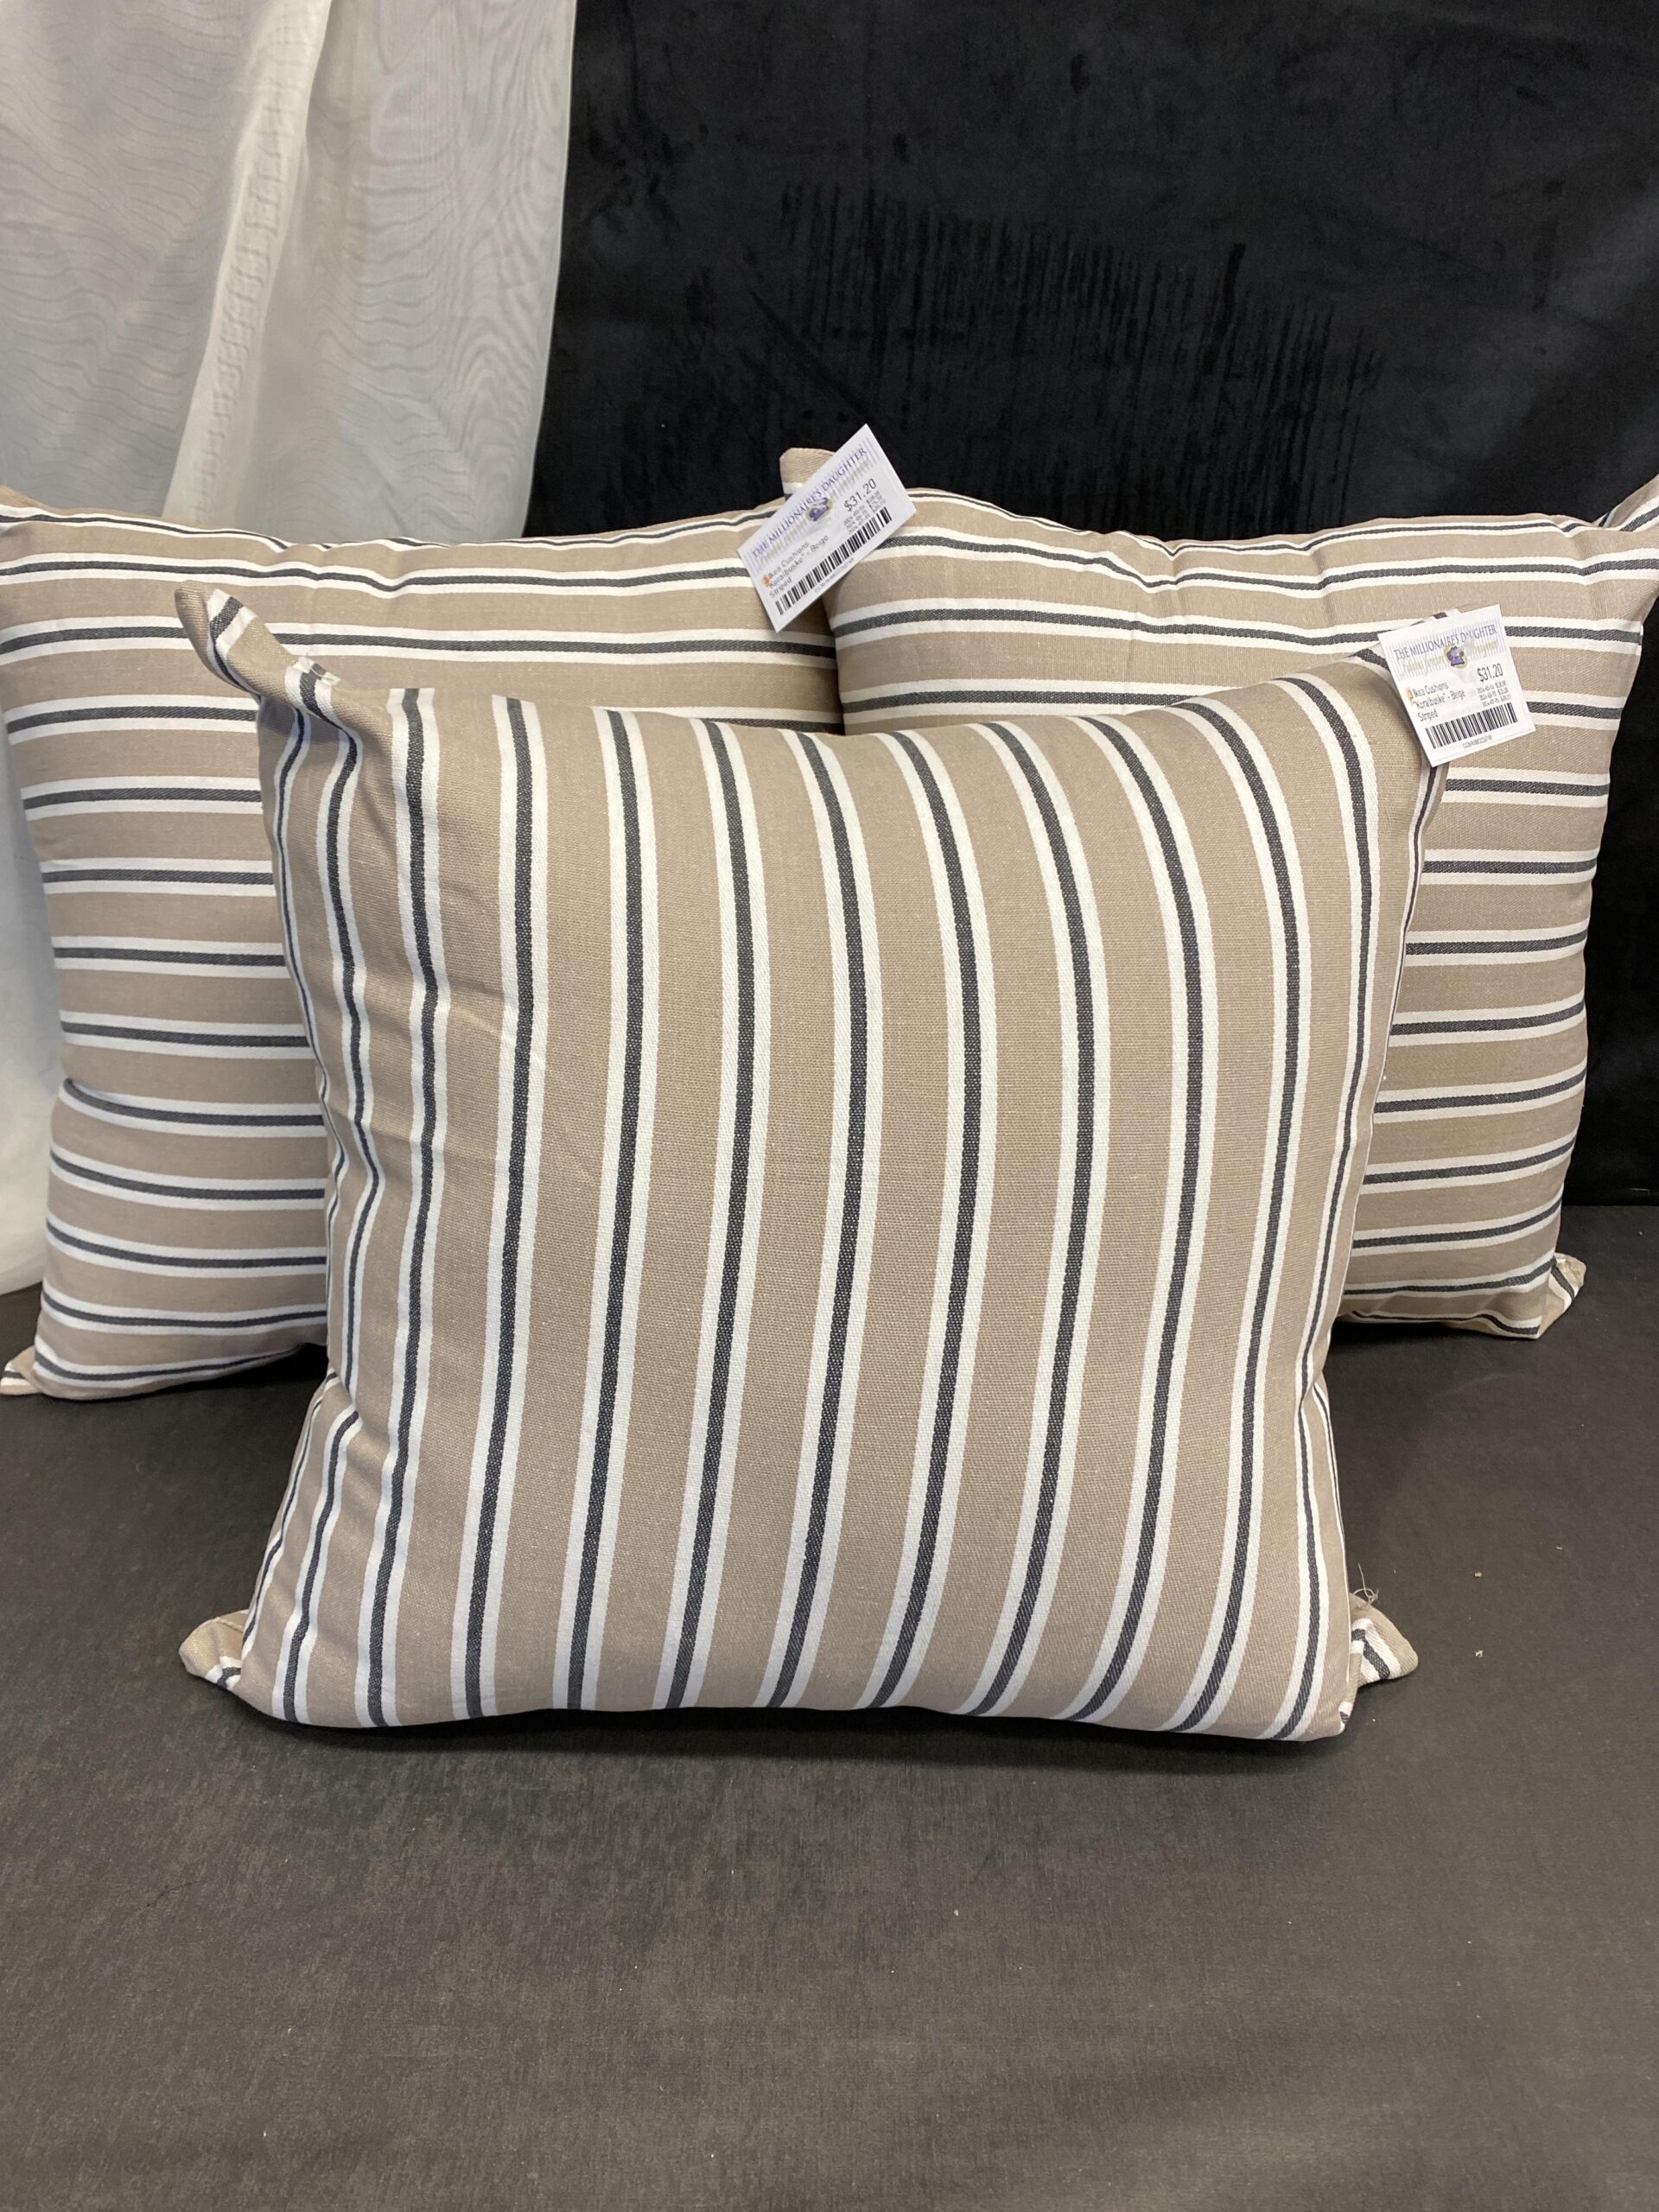 3 Ikea Cushions “Koralbuske” – Beige Striped